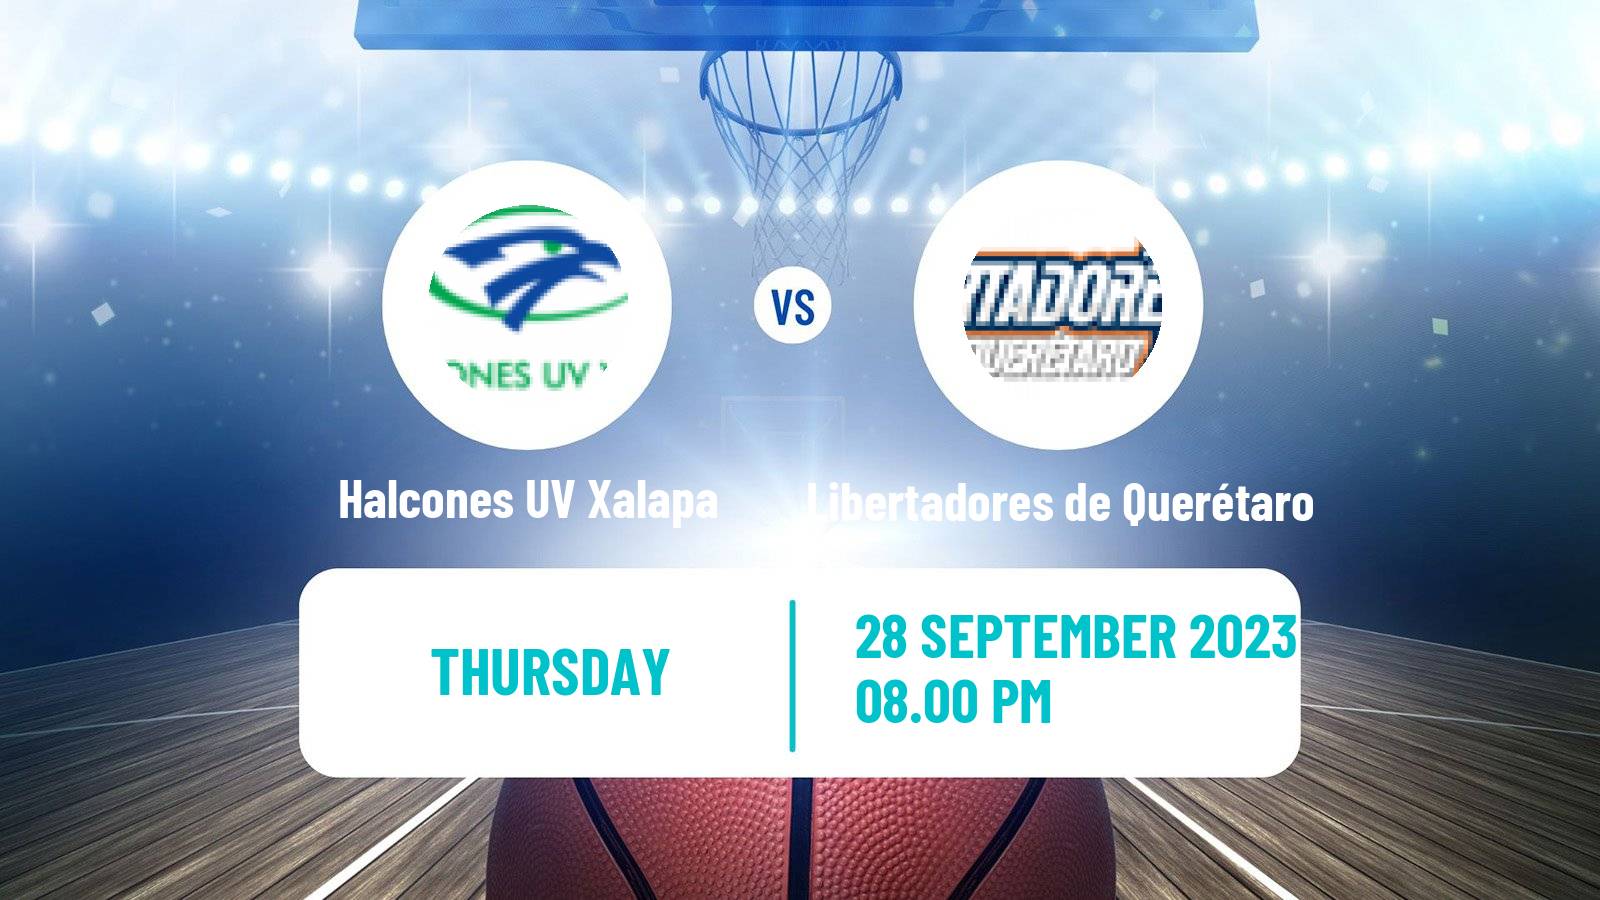 Basketball Club Friendly Basketball Halcones UV Xalapa - Libertadores de Querétaro